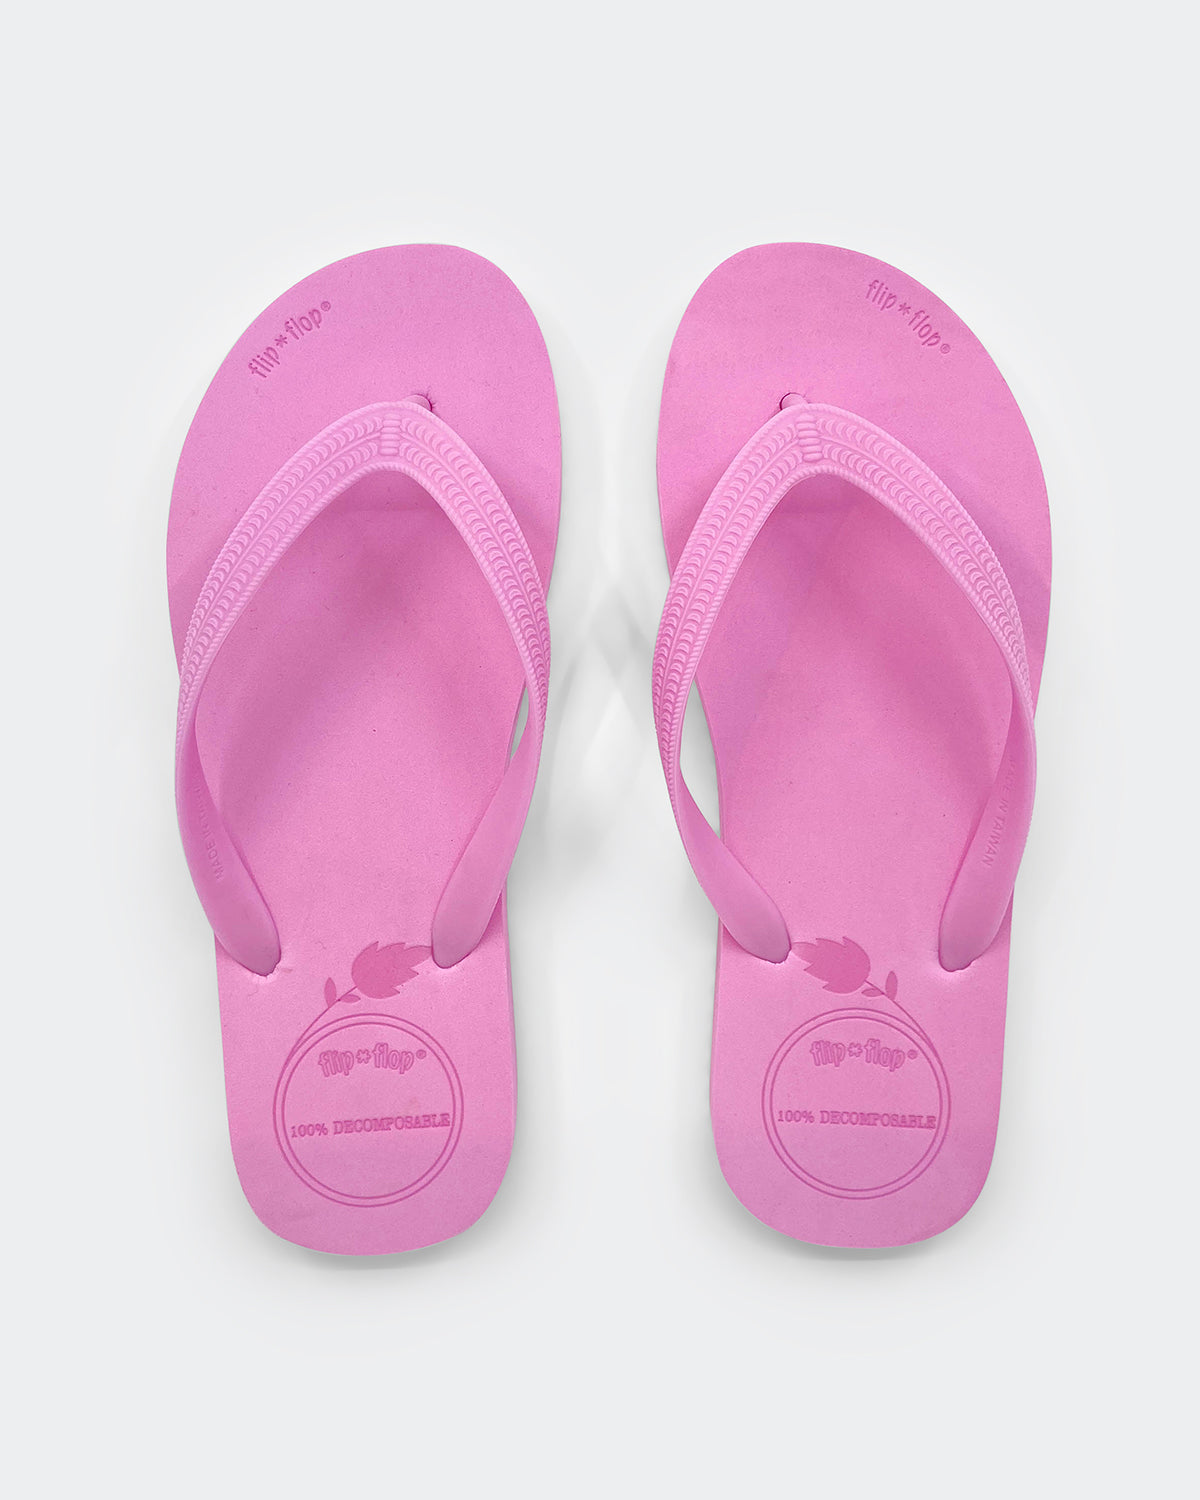 Flip Flop vegan in color pink by Flip*Flop Original